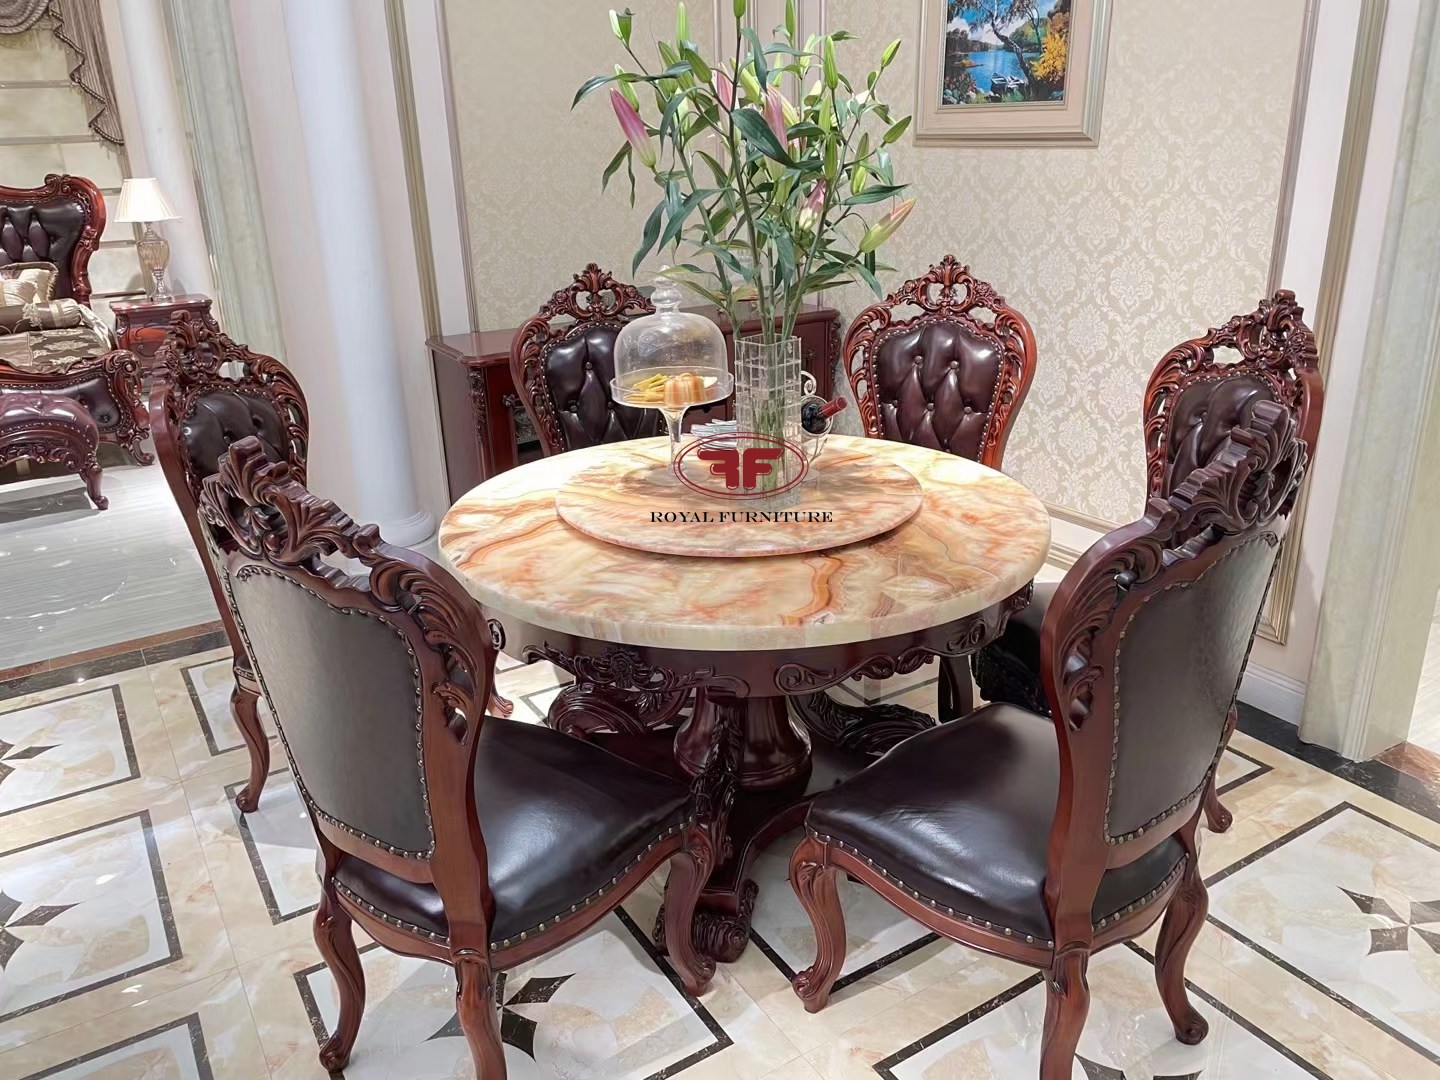 Nếu bạn đang tìm kiếm một bộ bàn ăn mang phong cách cổ điển đẳng cấp, thì đây là sự lựa chọn hoàn hảo. Bộ bàn ăn được chế tác từ gỗ hương cao cấp, mang đến sự ấm áp và sang trọng trong không gian ăn uống của bạn. Hãy xem bức ảnh để tìm hiểu thêm về kiểu dáng và màu sắc của sản phẩm này.